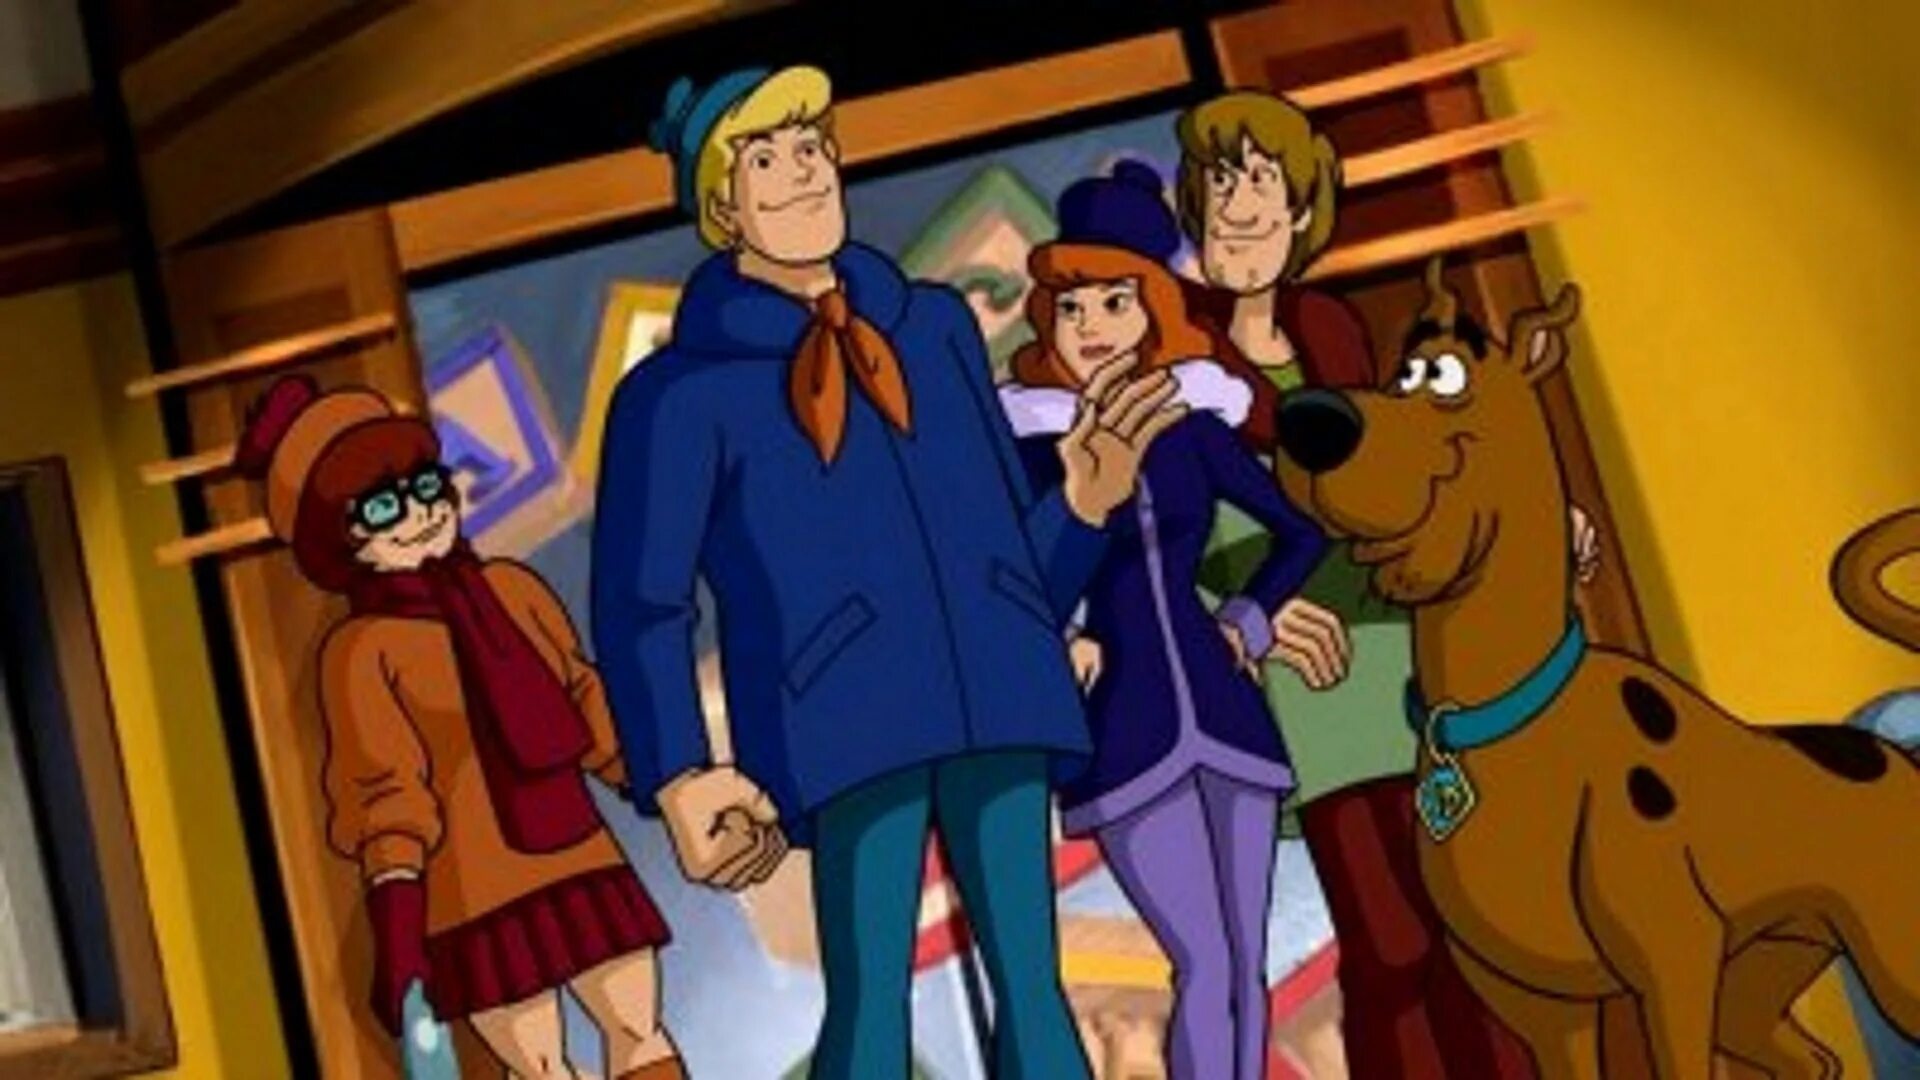 Scooby doo 2002 г. Скуби Ду. Герои мультика Скуби Ду. Скуби Ду 70-е годы.